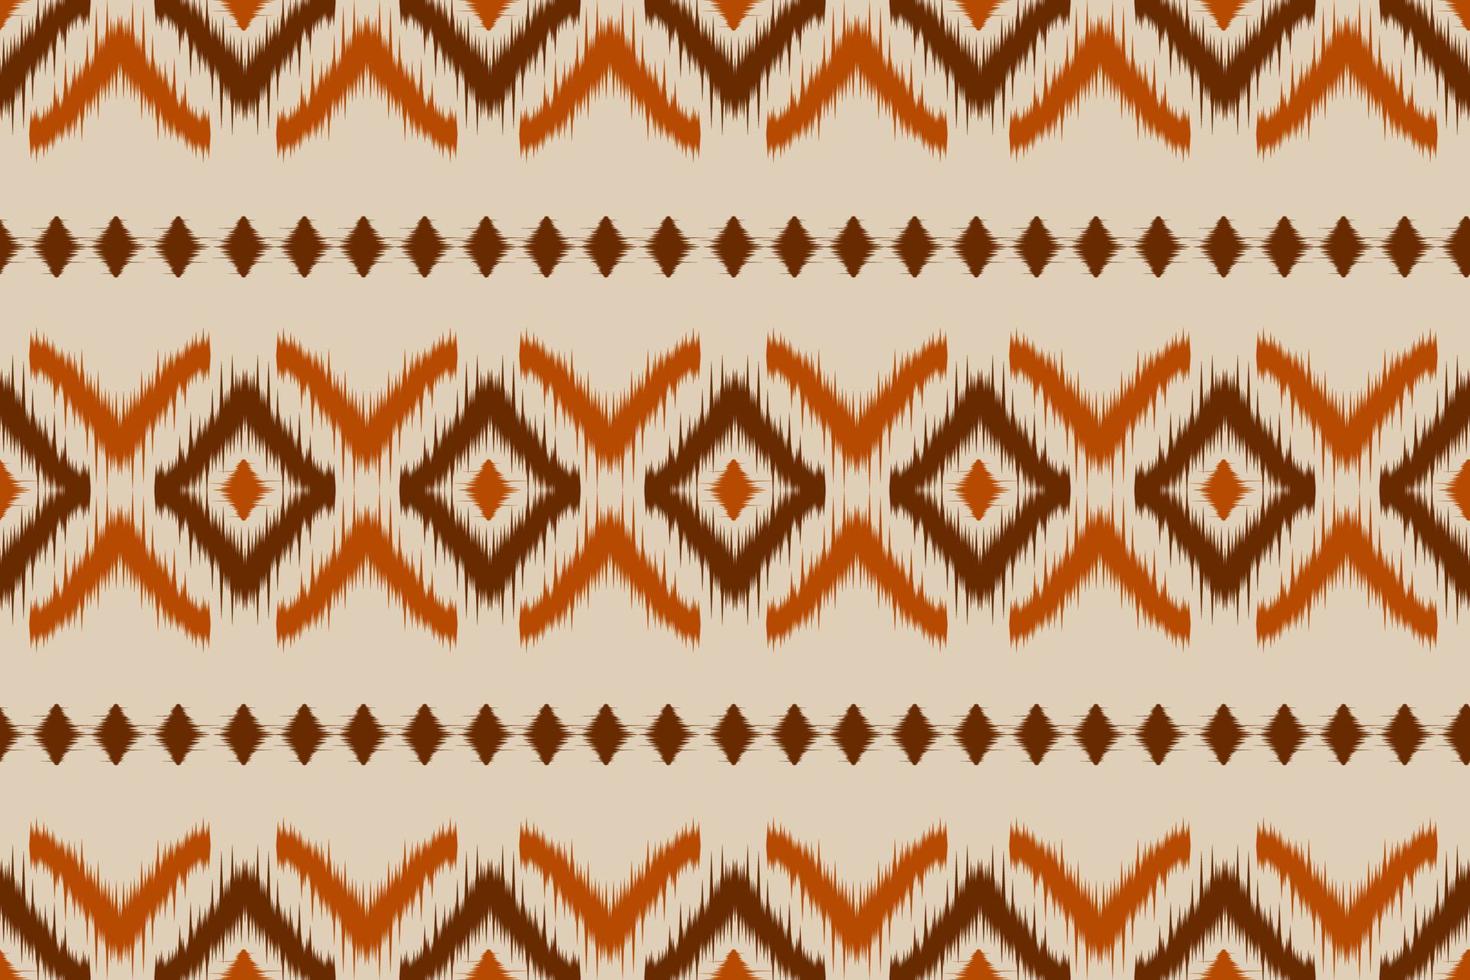 arte étnica ikat de tecido. padrão sem emenda em tribal. impressão de ornamento geométrico asteca. vetor